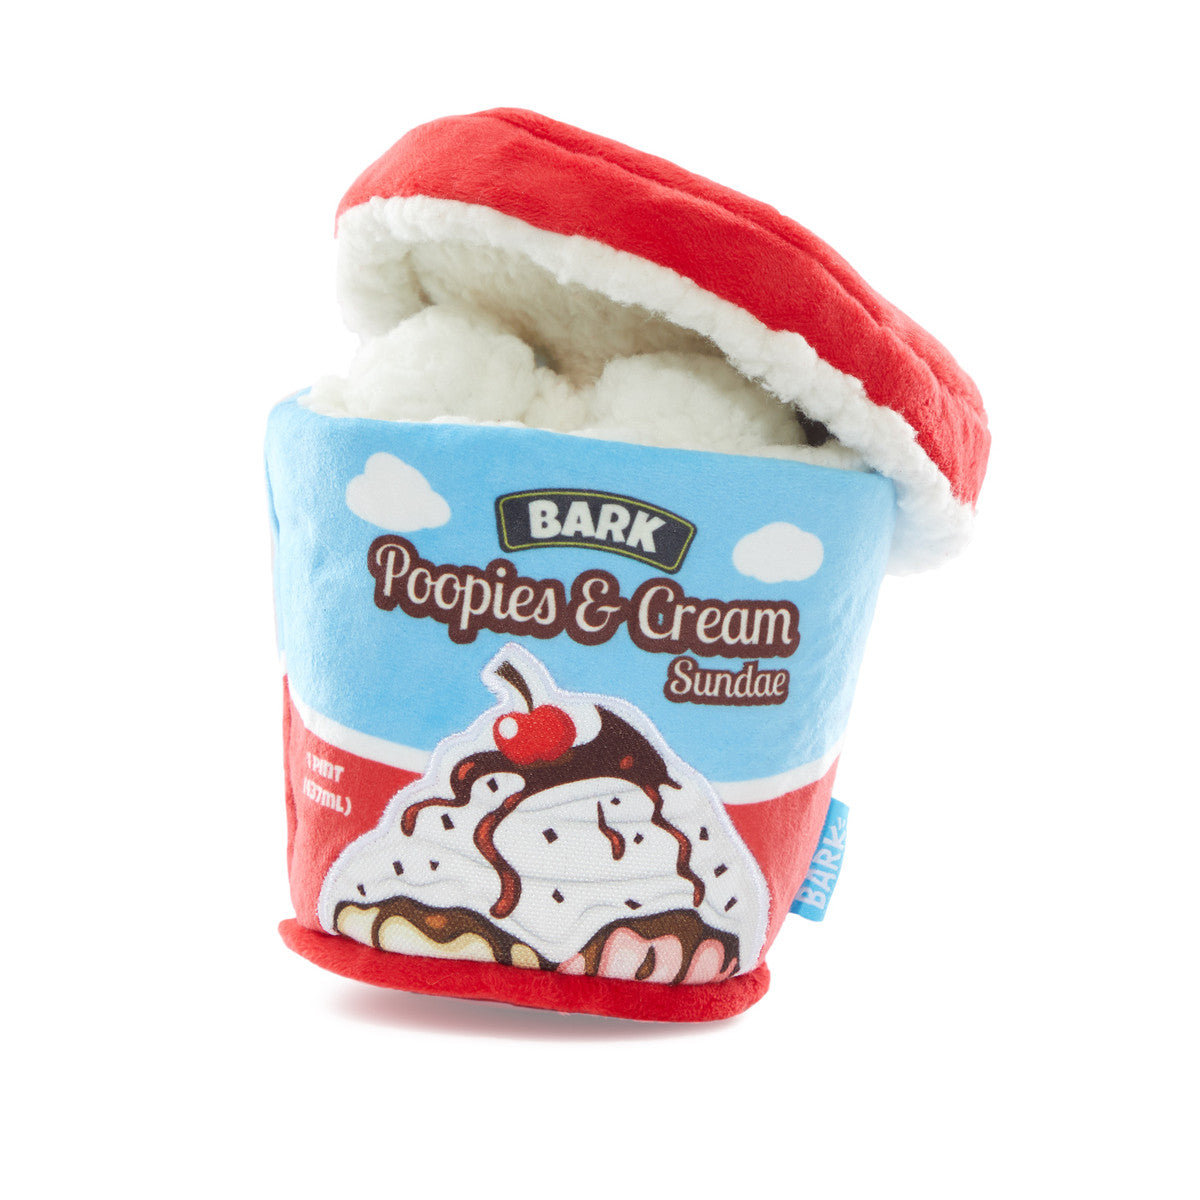 Poopies & Cream Ice Cream Pint Toy